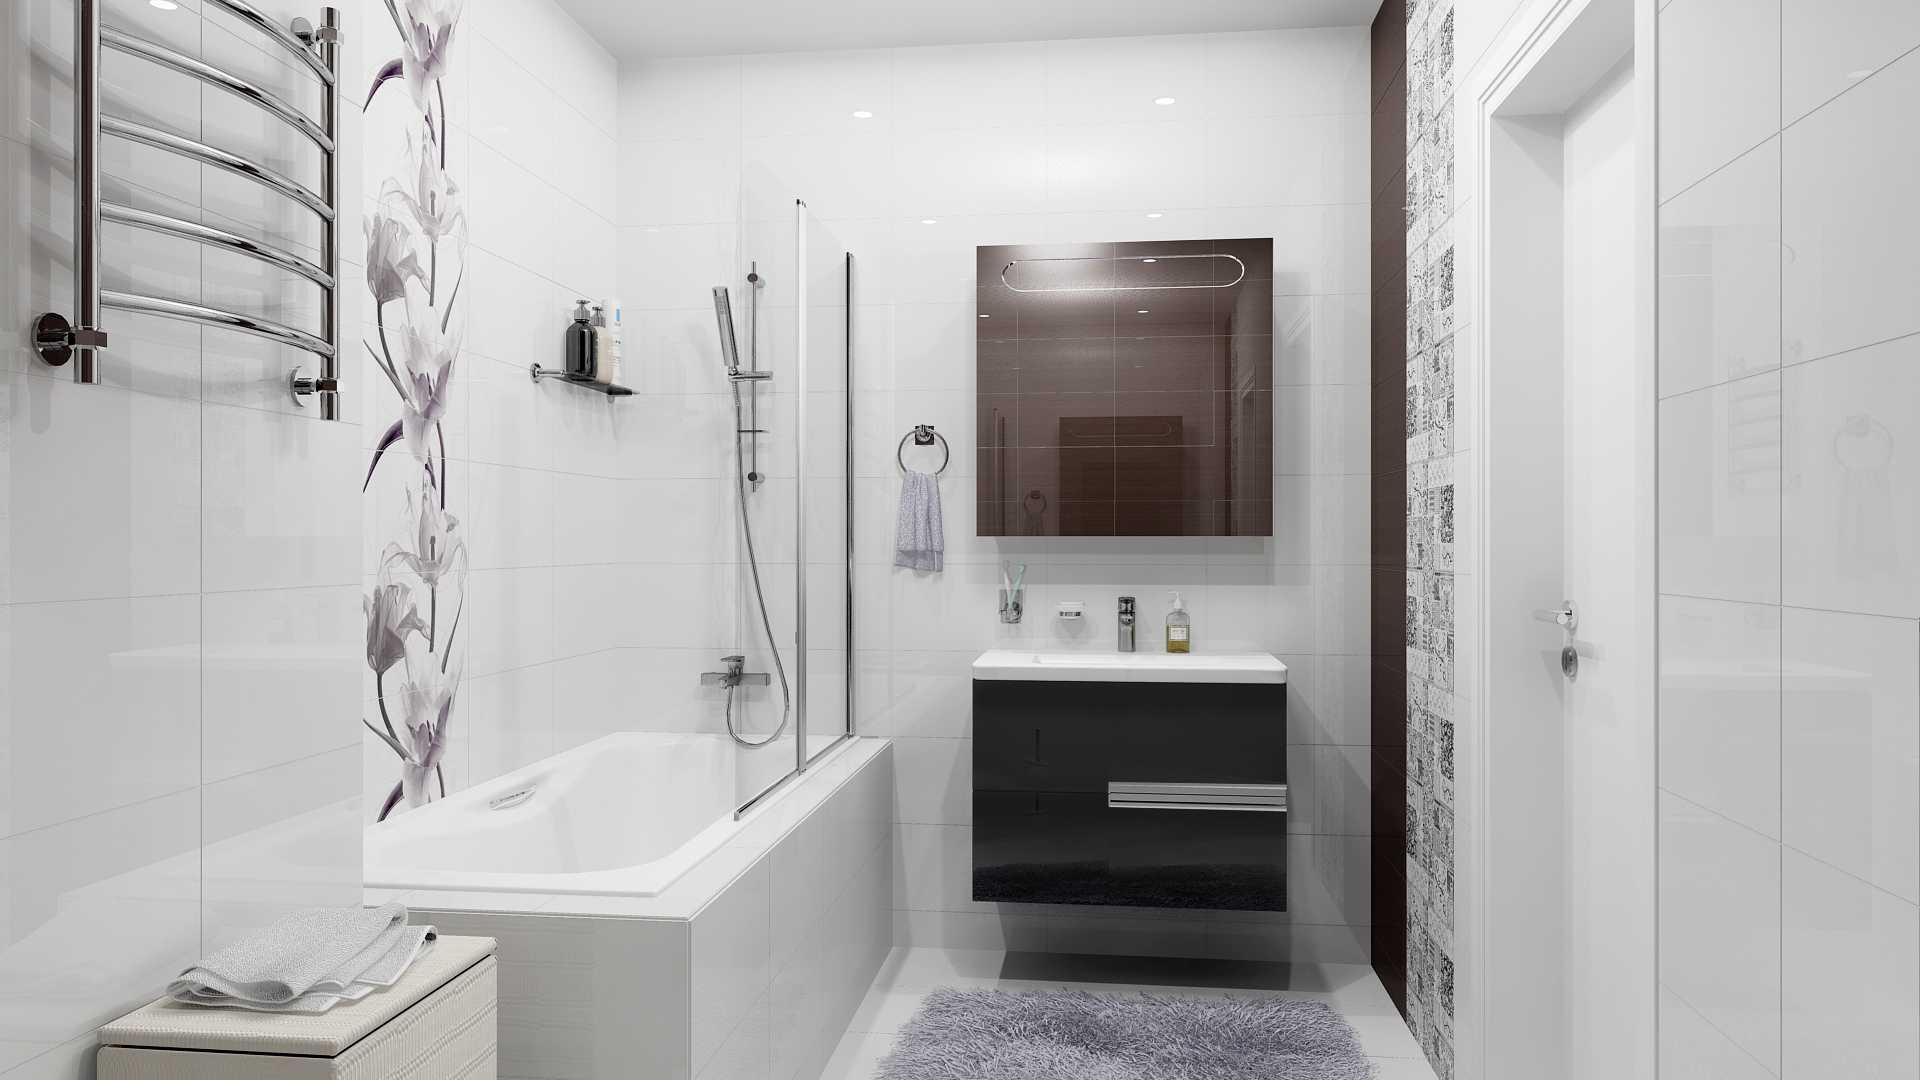 Обзор лучших образцов керамической плитки для стен и пола в ванной, кухне; белая глазурованная облицовка, под дерево керама марацци, керамин